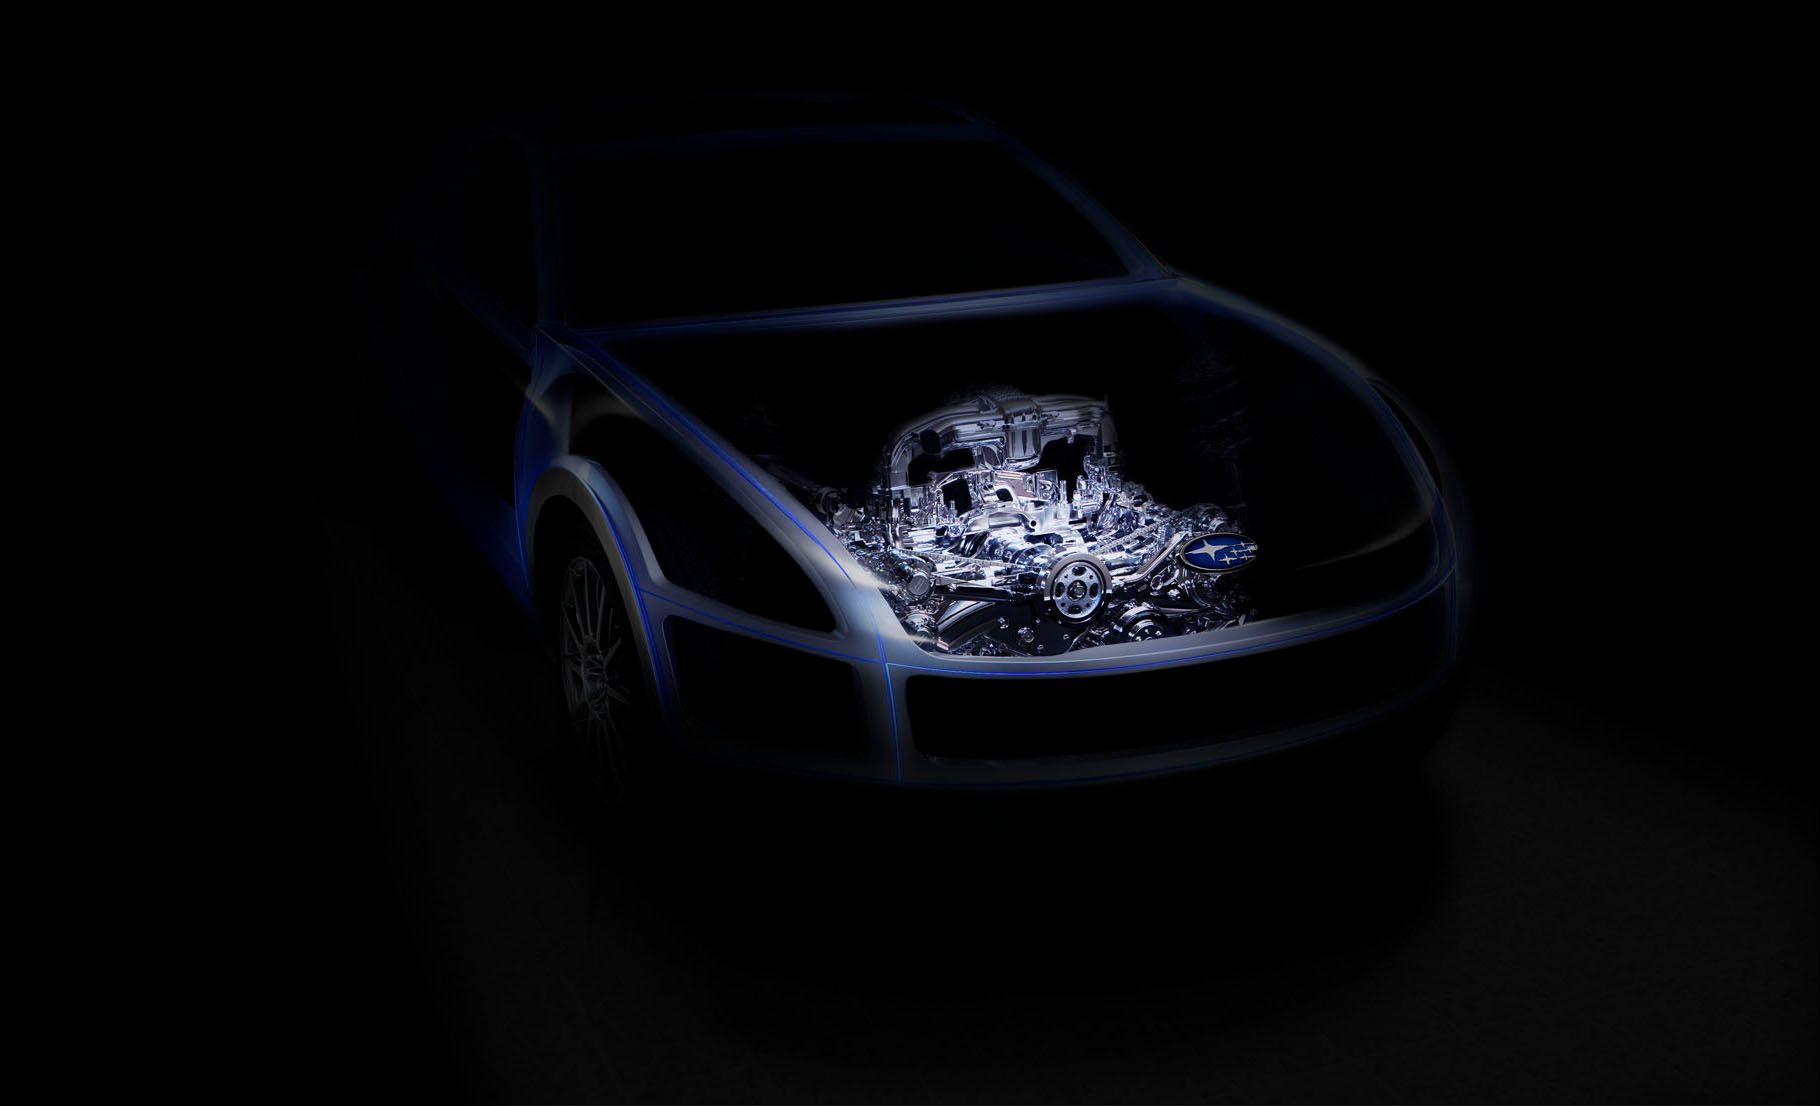 2011 Subaru RWD Sports Car Technology Concept